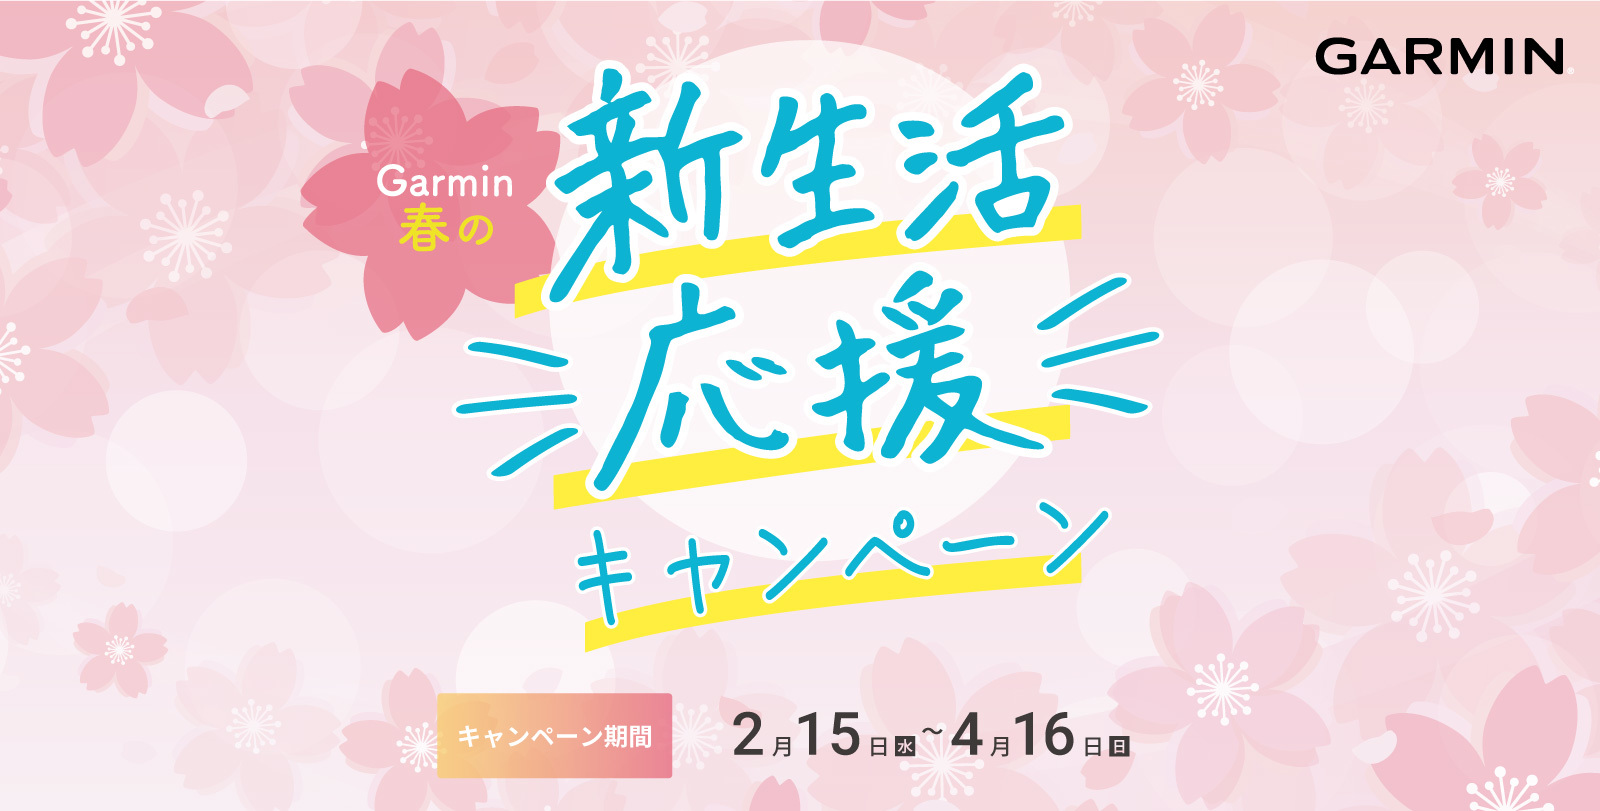 新生活をGarminと一緒に始めよう！
Garmin「春の新生活応援キャンペーン」を開催　
2月15日(水)～4月16日(日)に
特別価格やプレゼントキャンペーンを同時開催